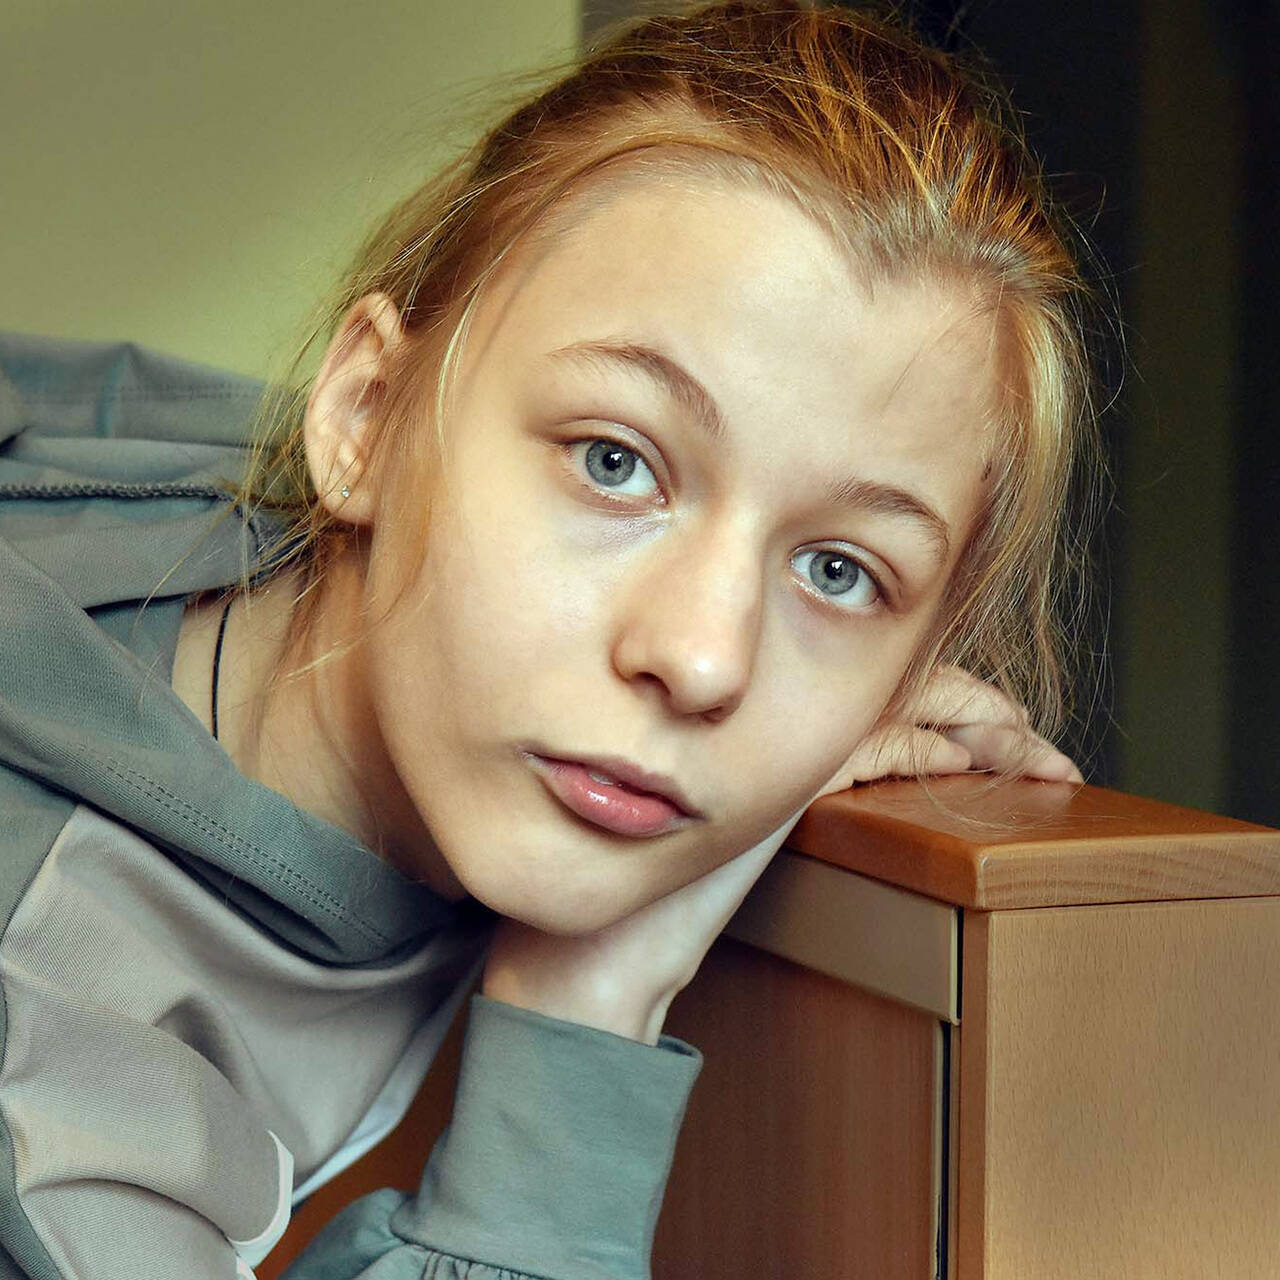 Все, что помнит, — страх» Российскую девочку отравили неизвестным ядом. Она  потеряла память и нуждается в вашей помощи: Общество: Россия: Lenta.ru